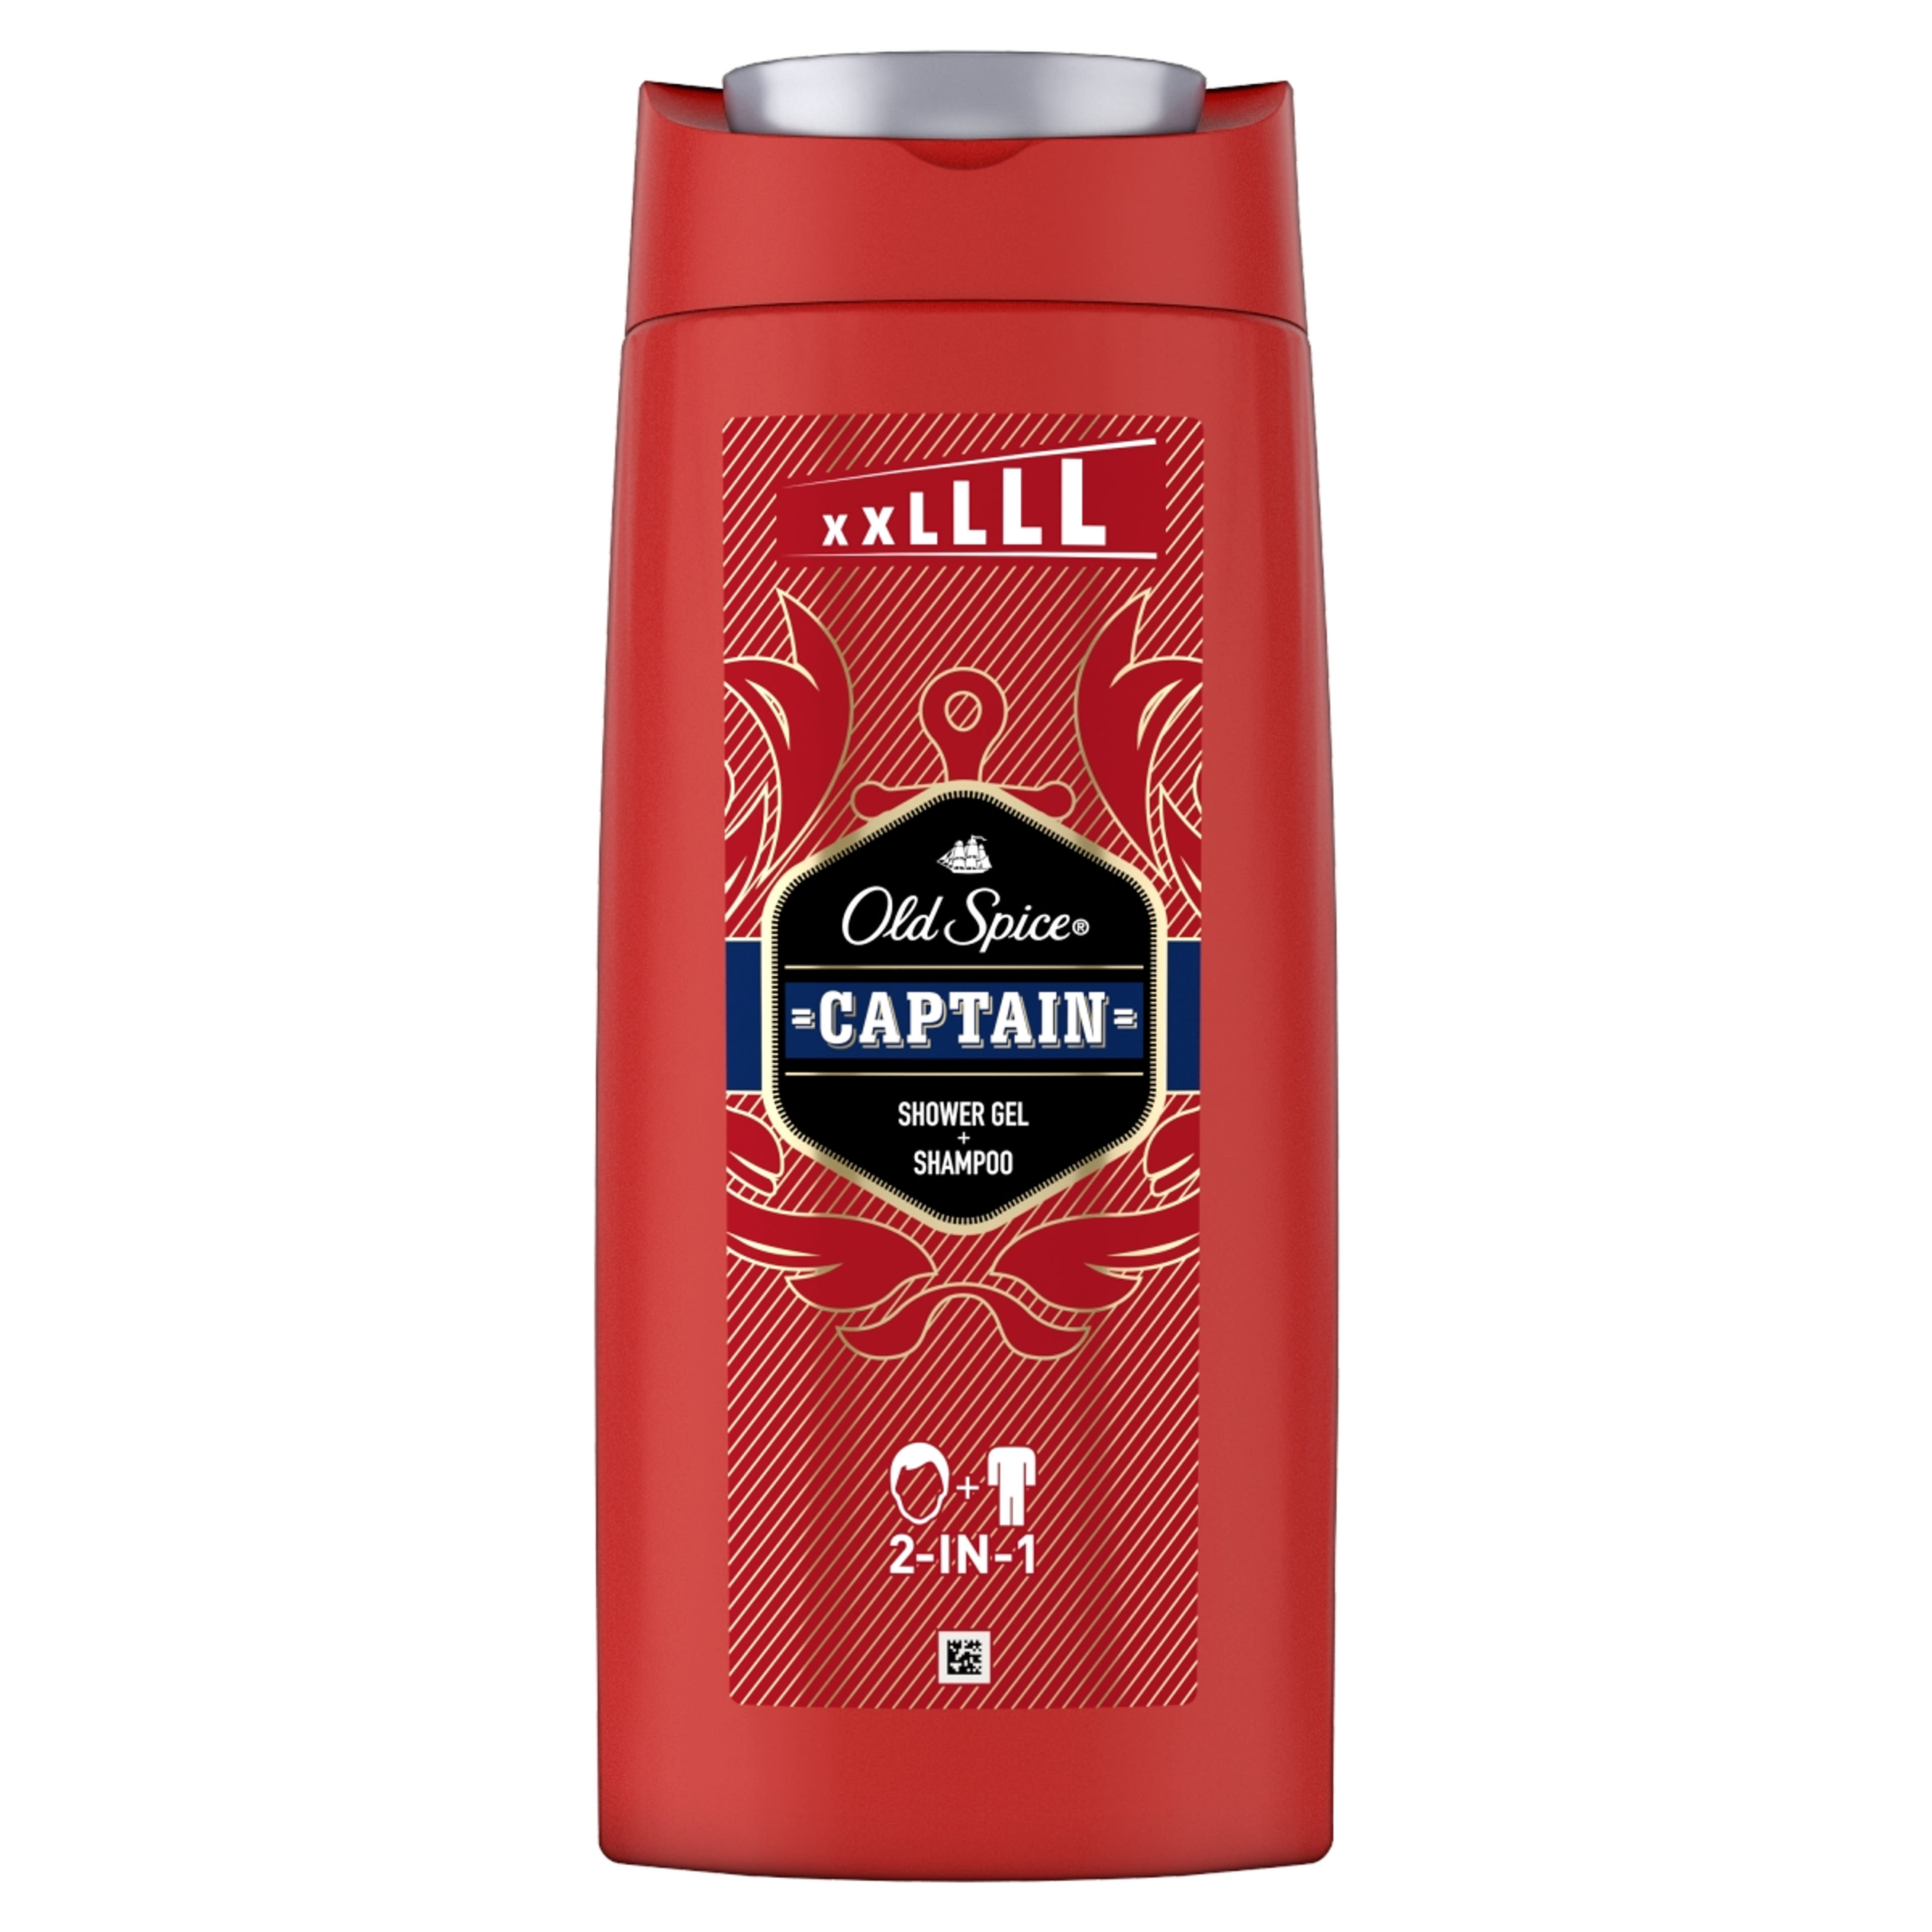 Old Spice Captain tusfürdő - 675 ml